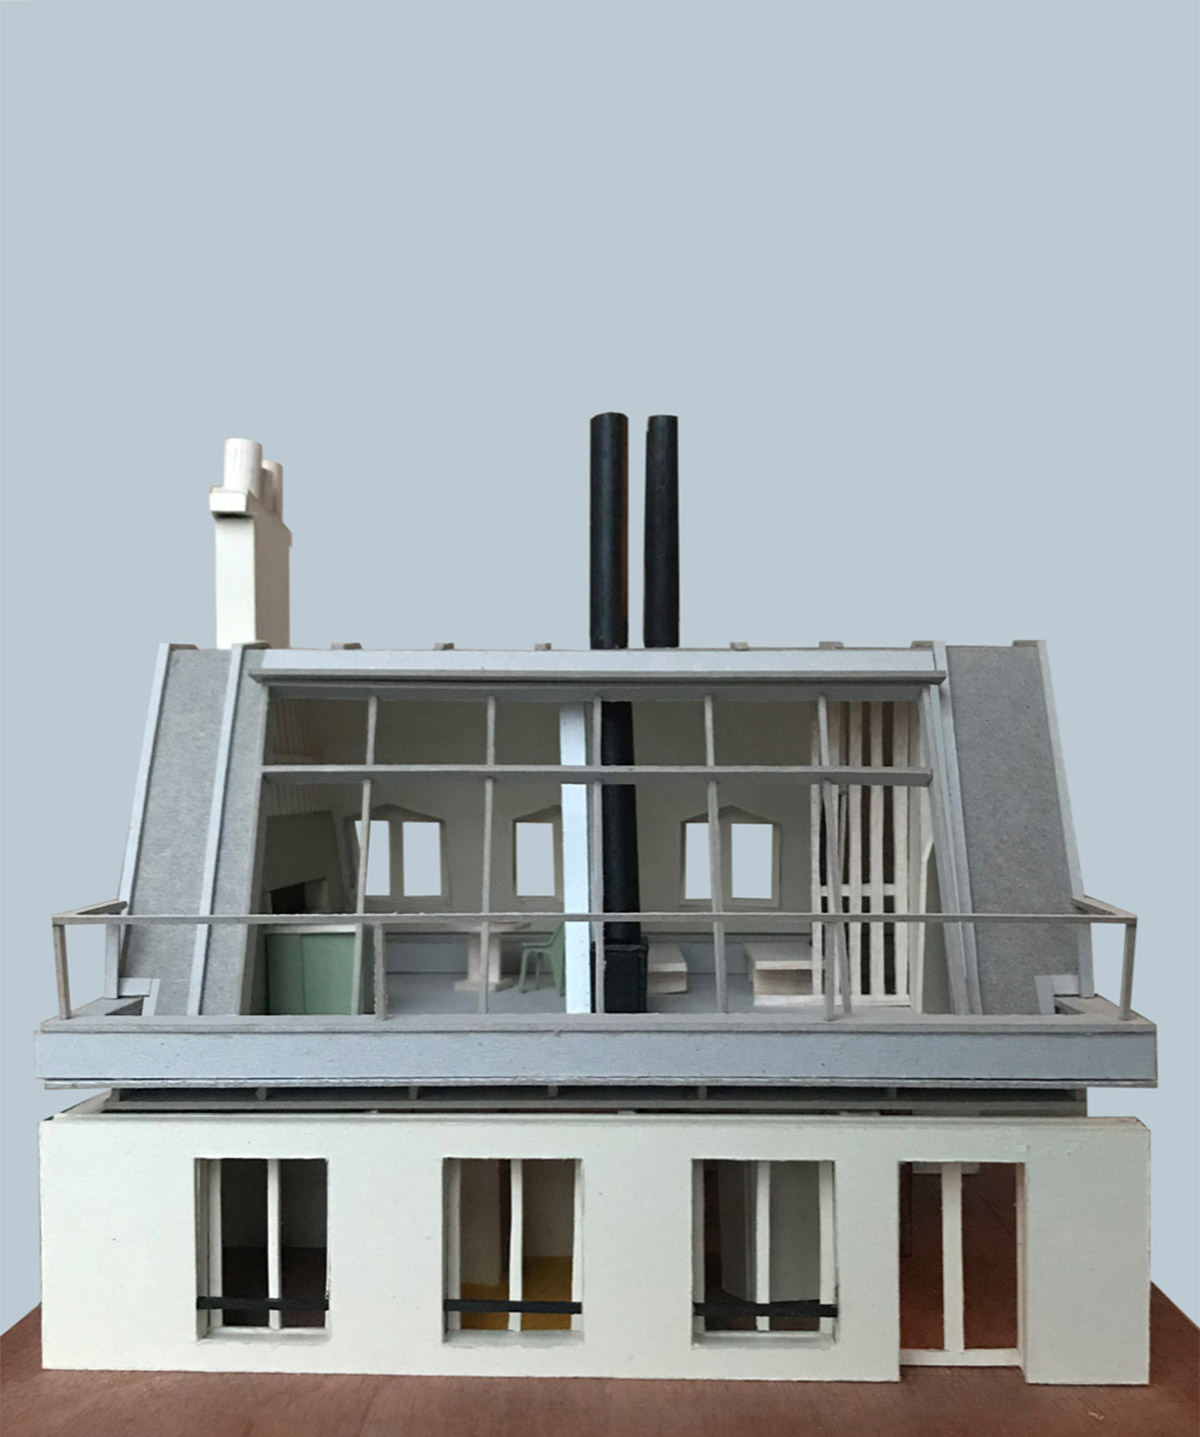 Vue de face de la maquette du projet "la maison suspendue" : ajout d'un étage à un immeuble parisien